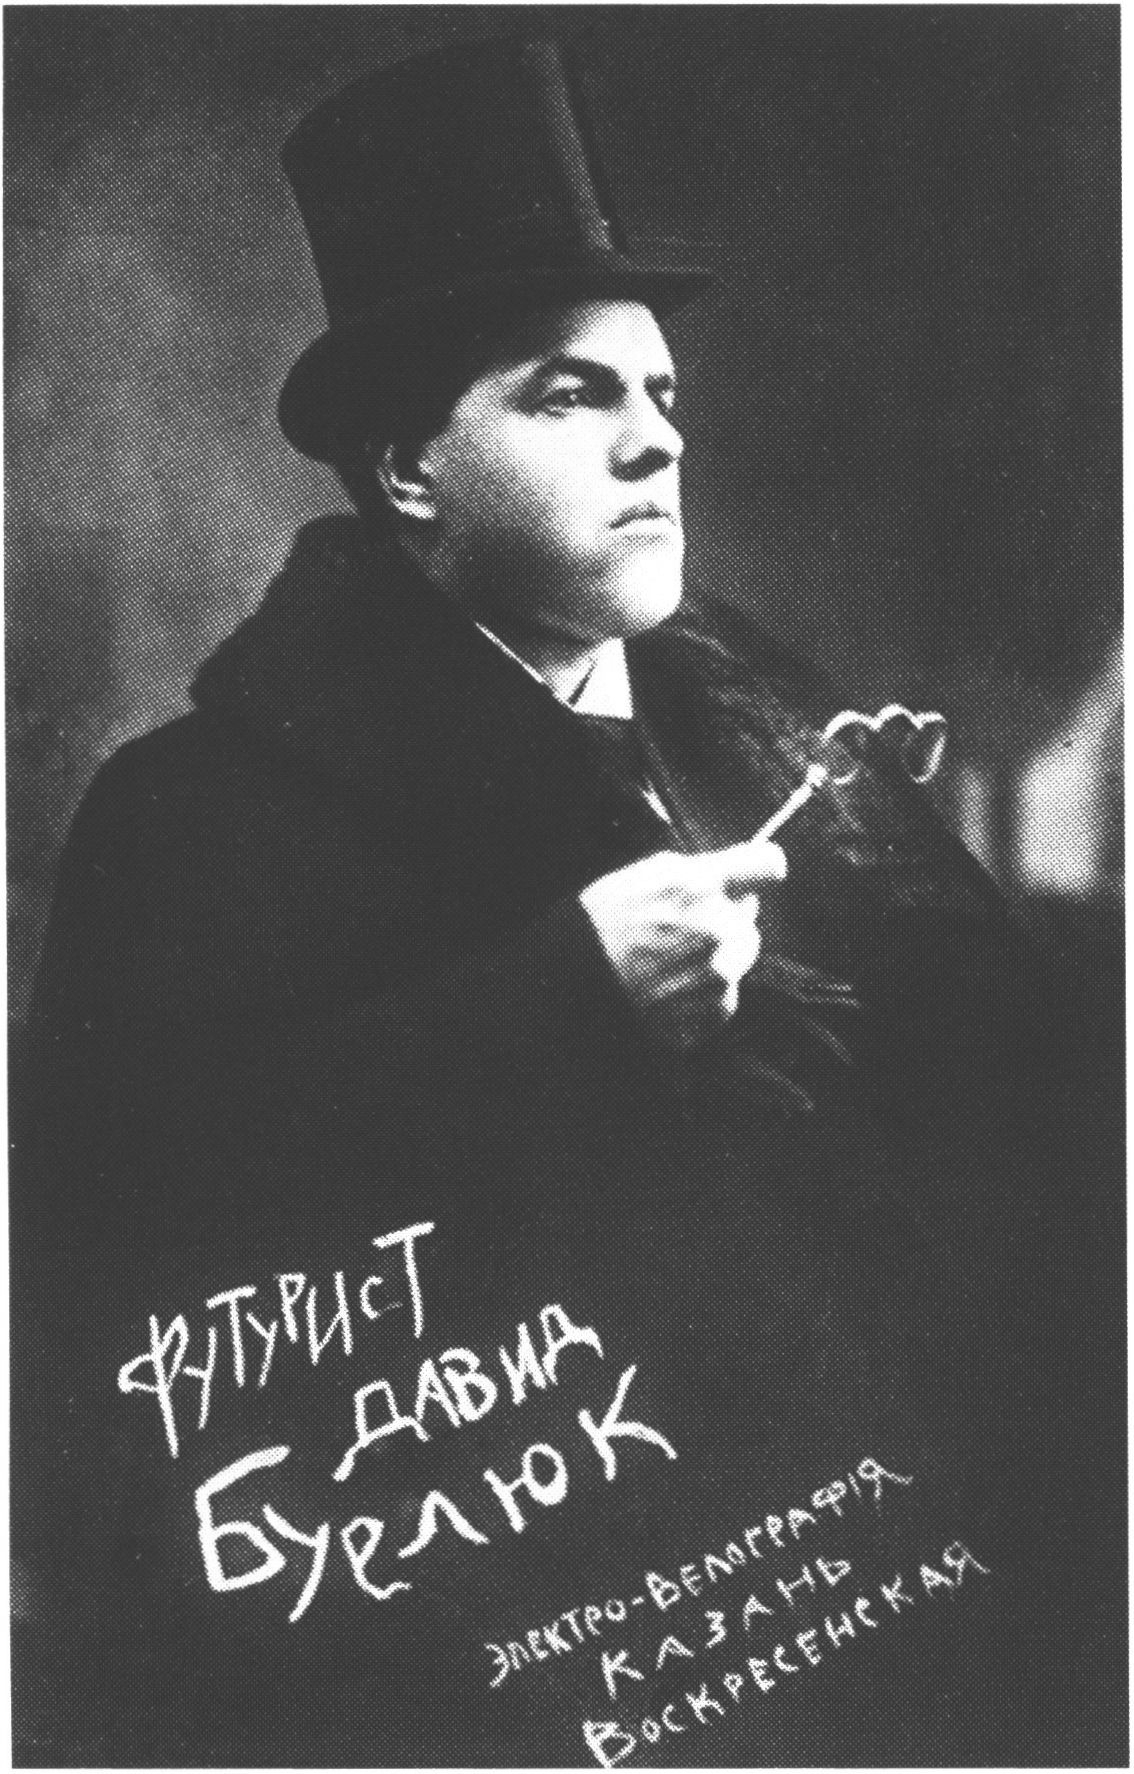 Давид Бурдюк. 1914 г.